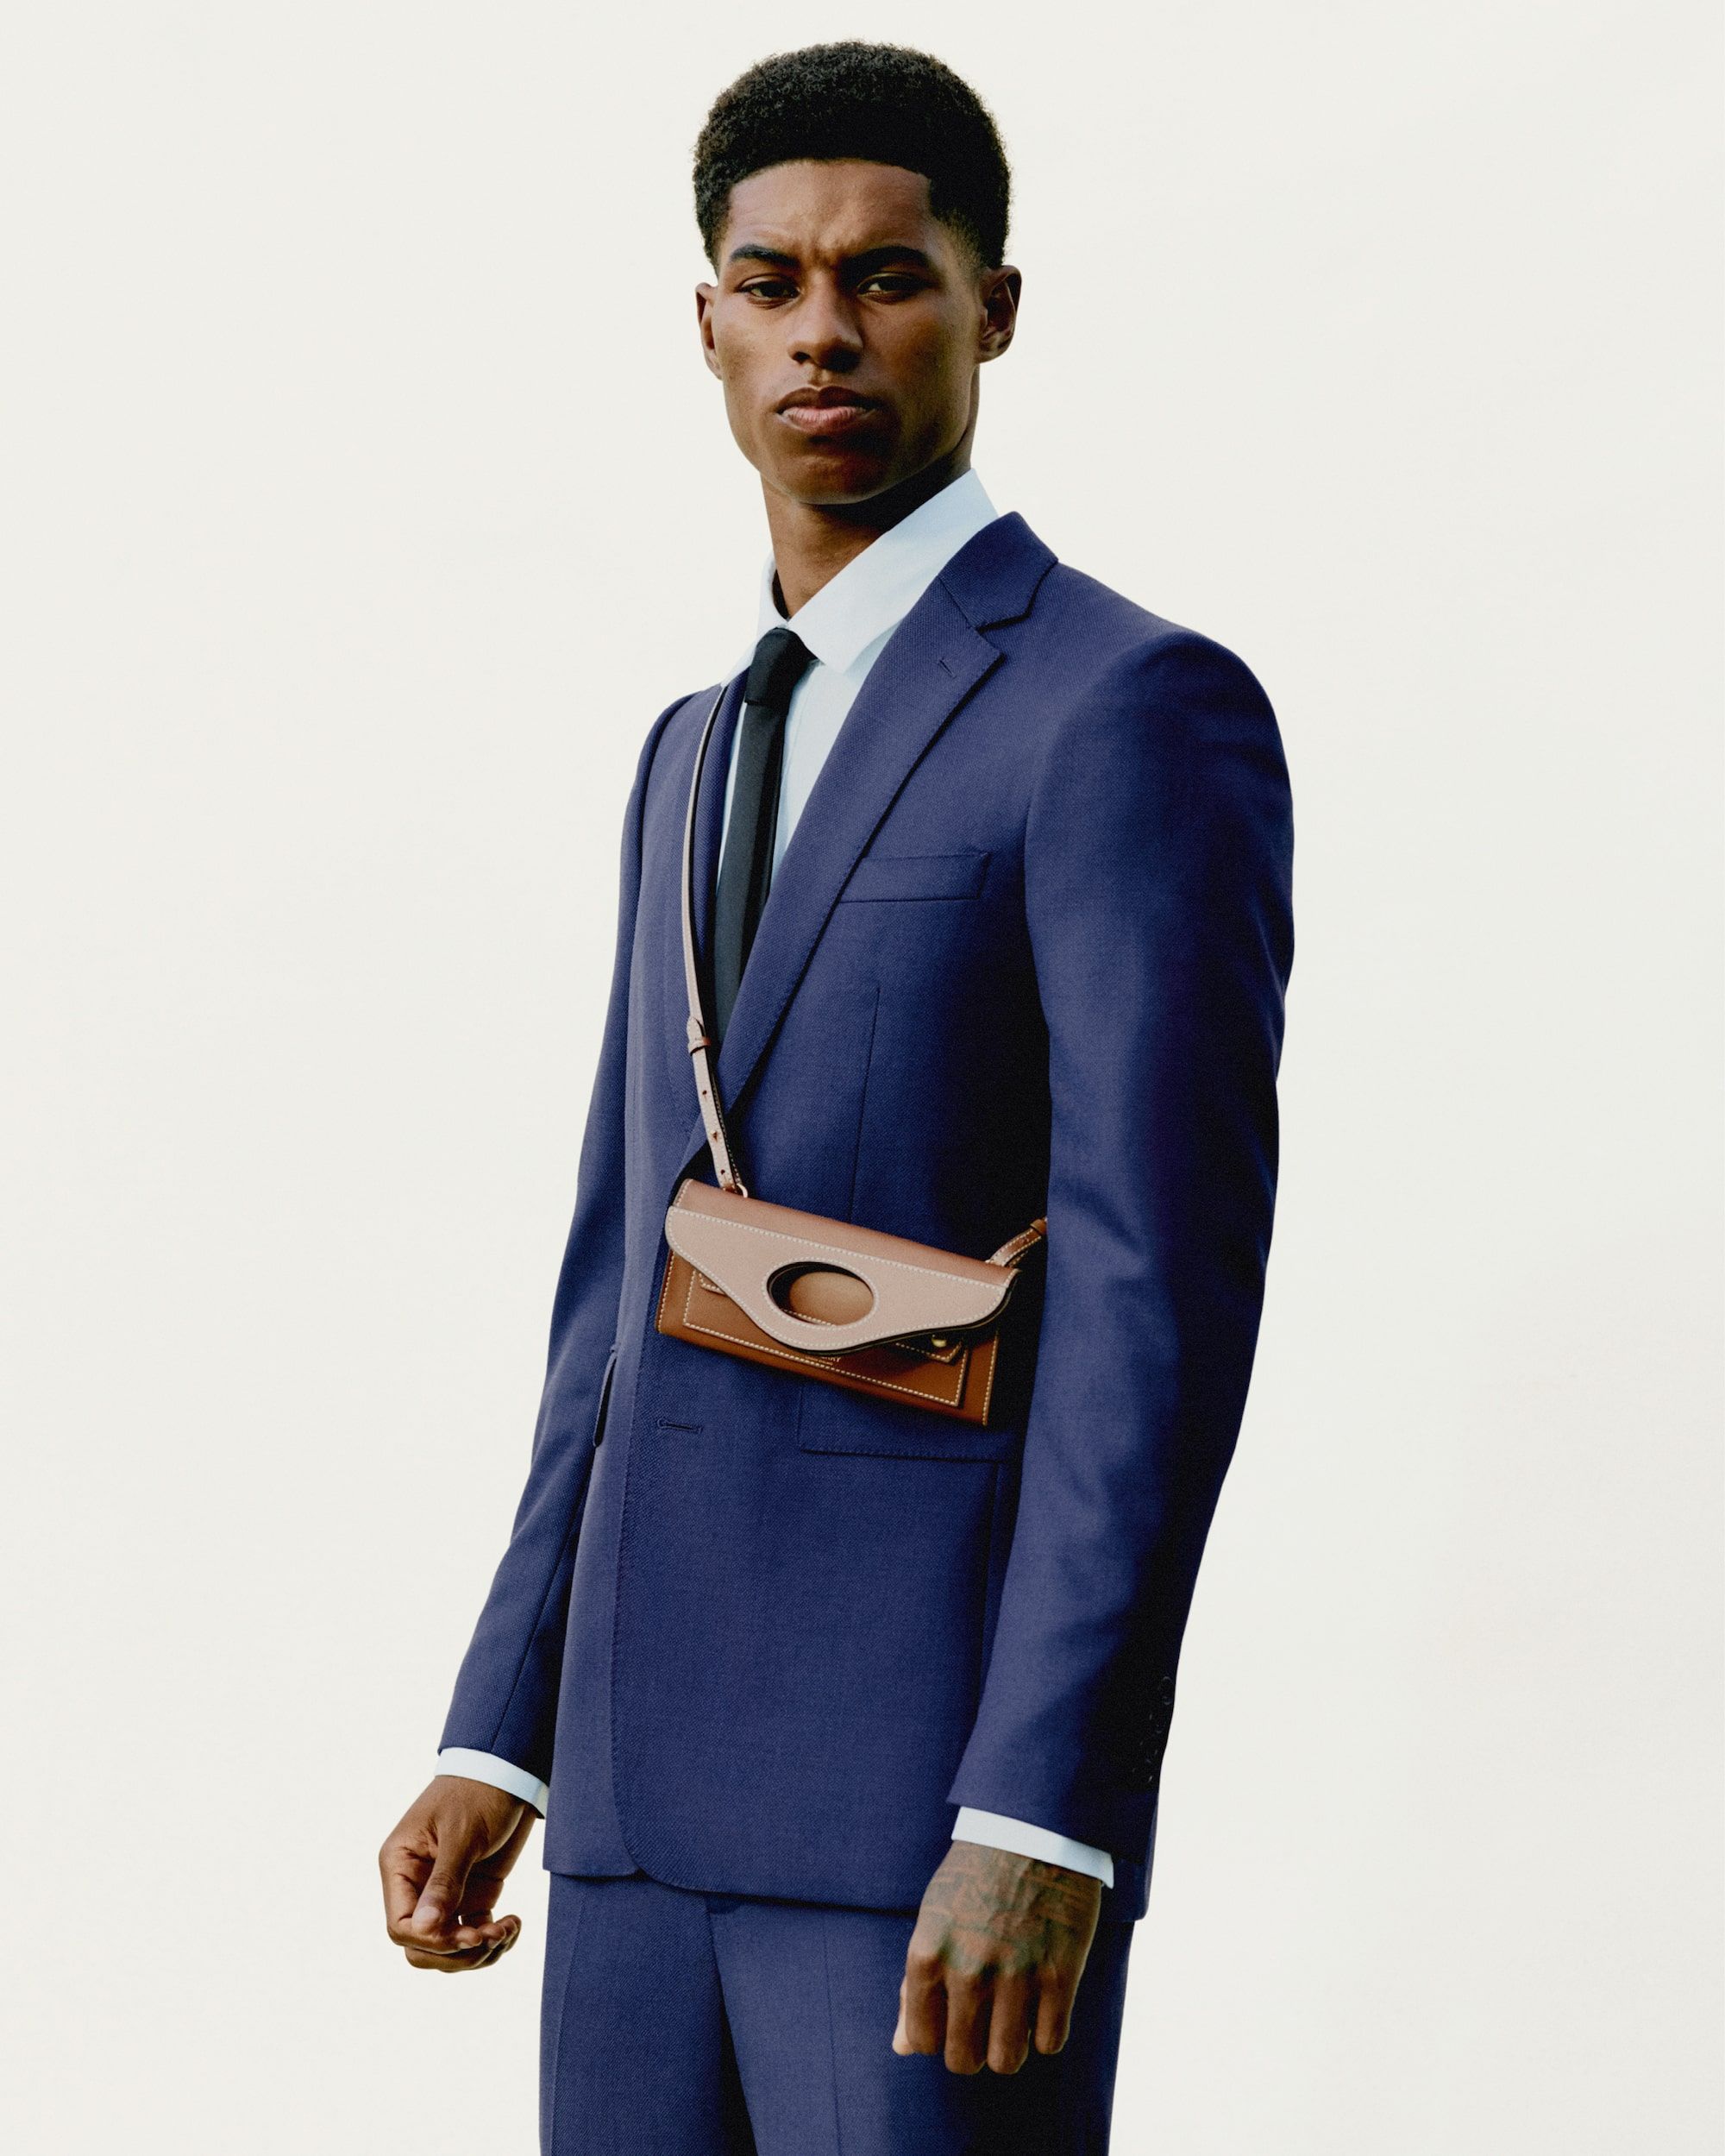 Louis Vuitton Marcus Rashford Jacket